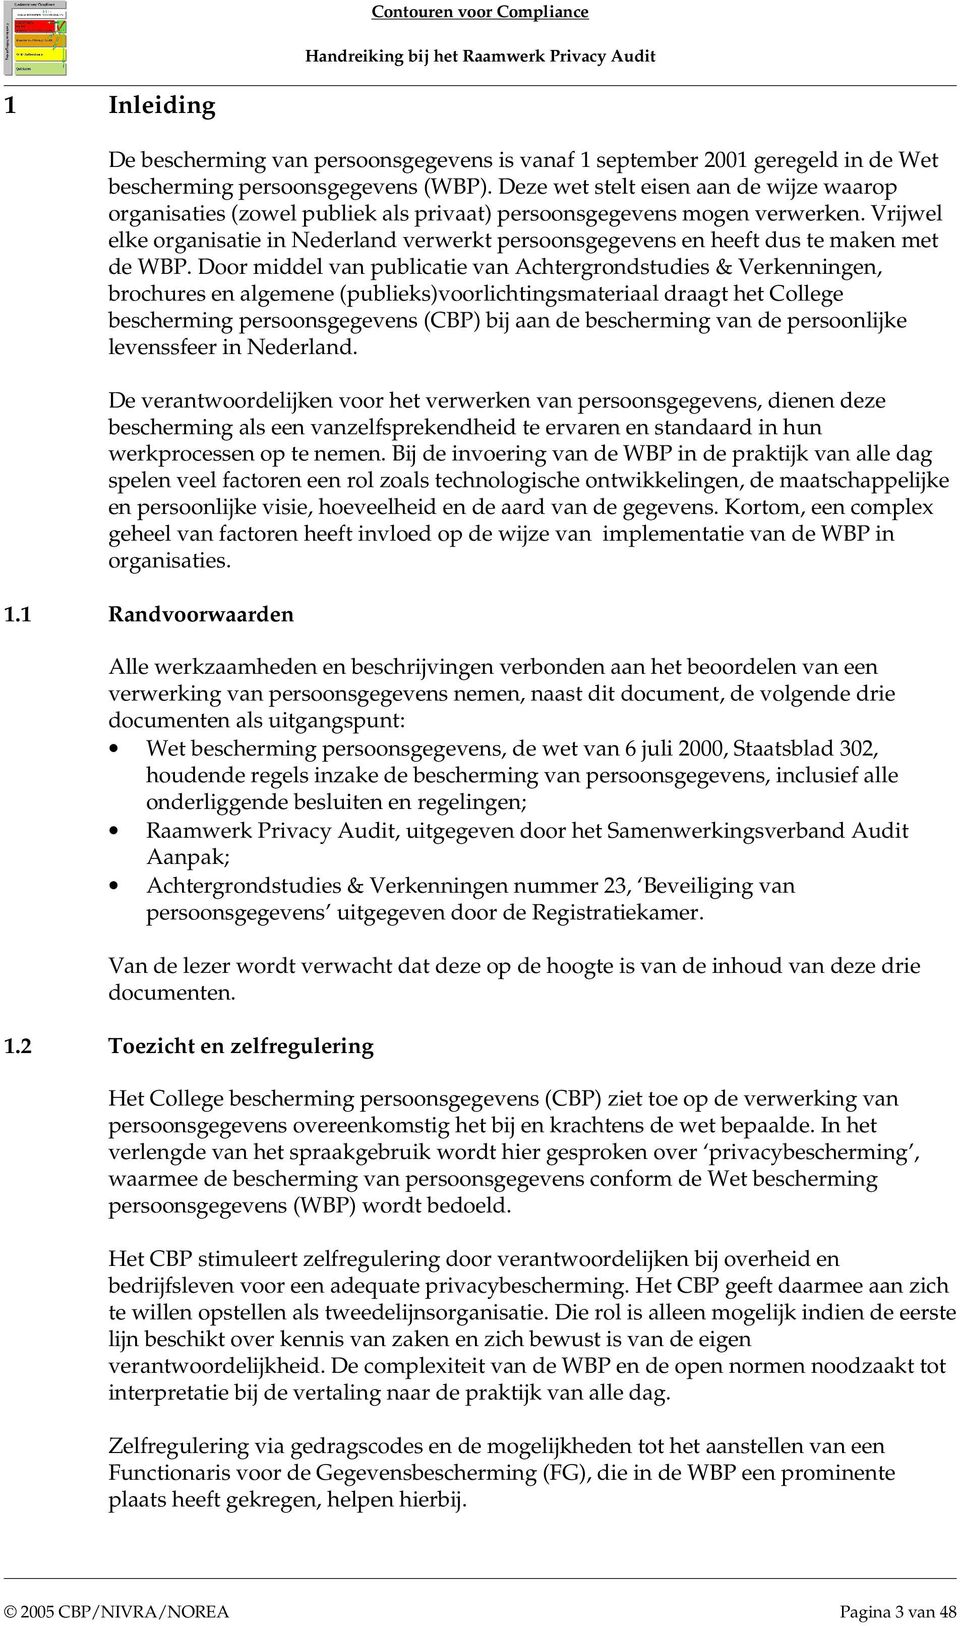 Vrijwel elke organisatie in Nederland verwerkt persoonsgegevens en heeft dus te maken met de WBP.